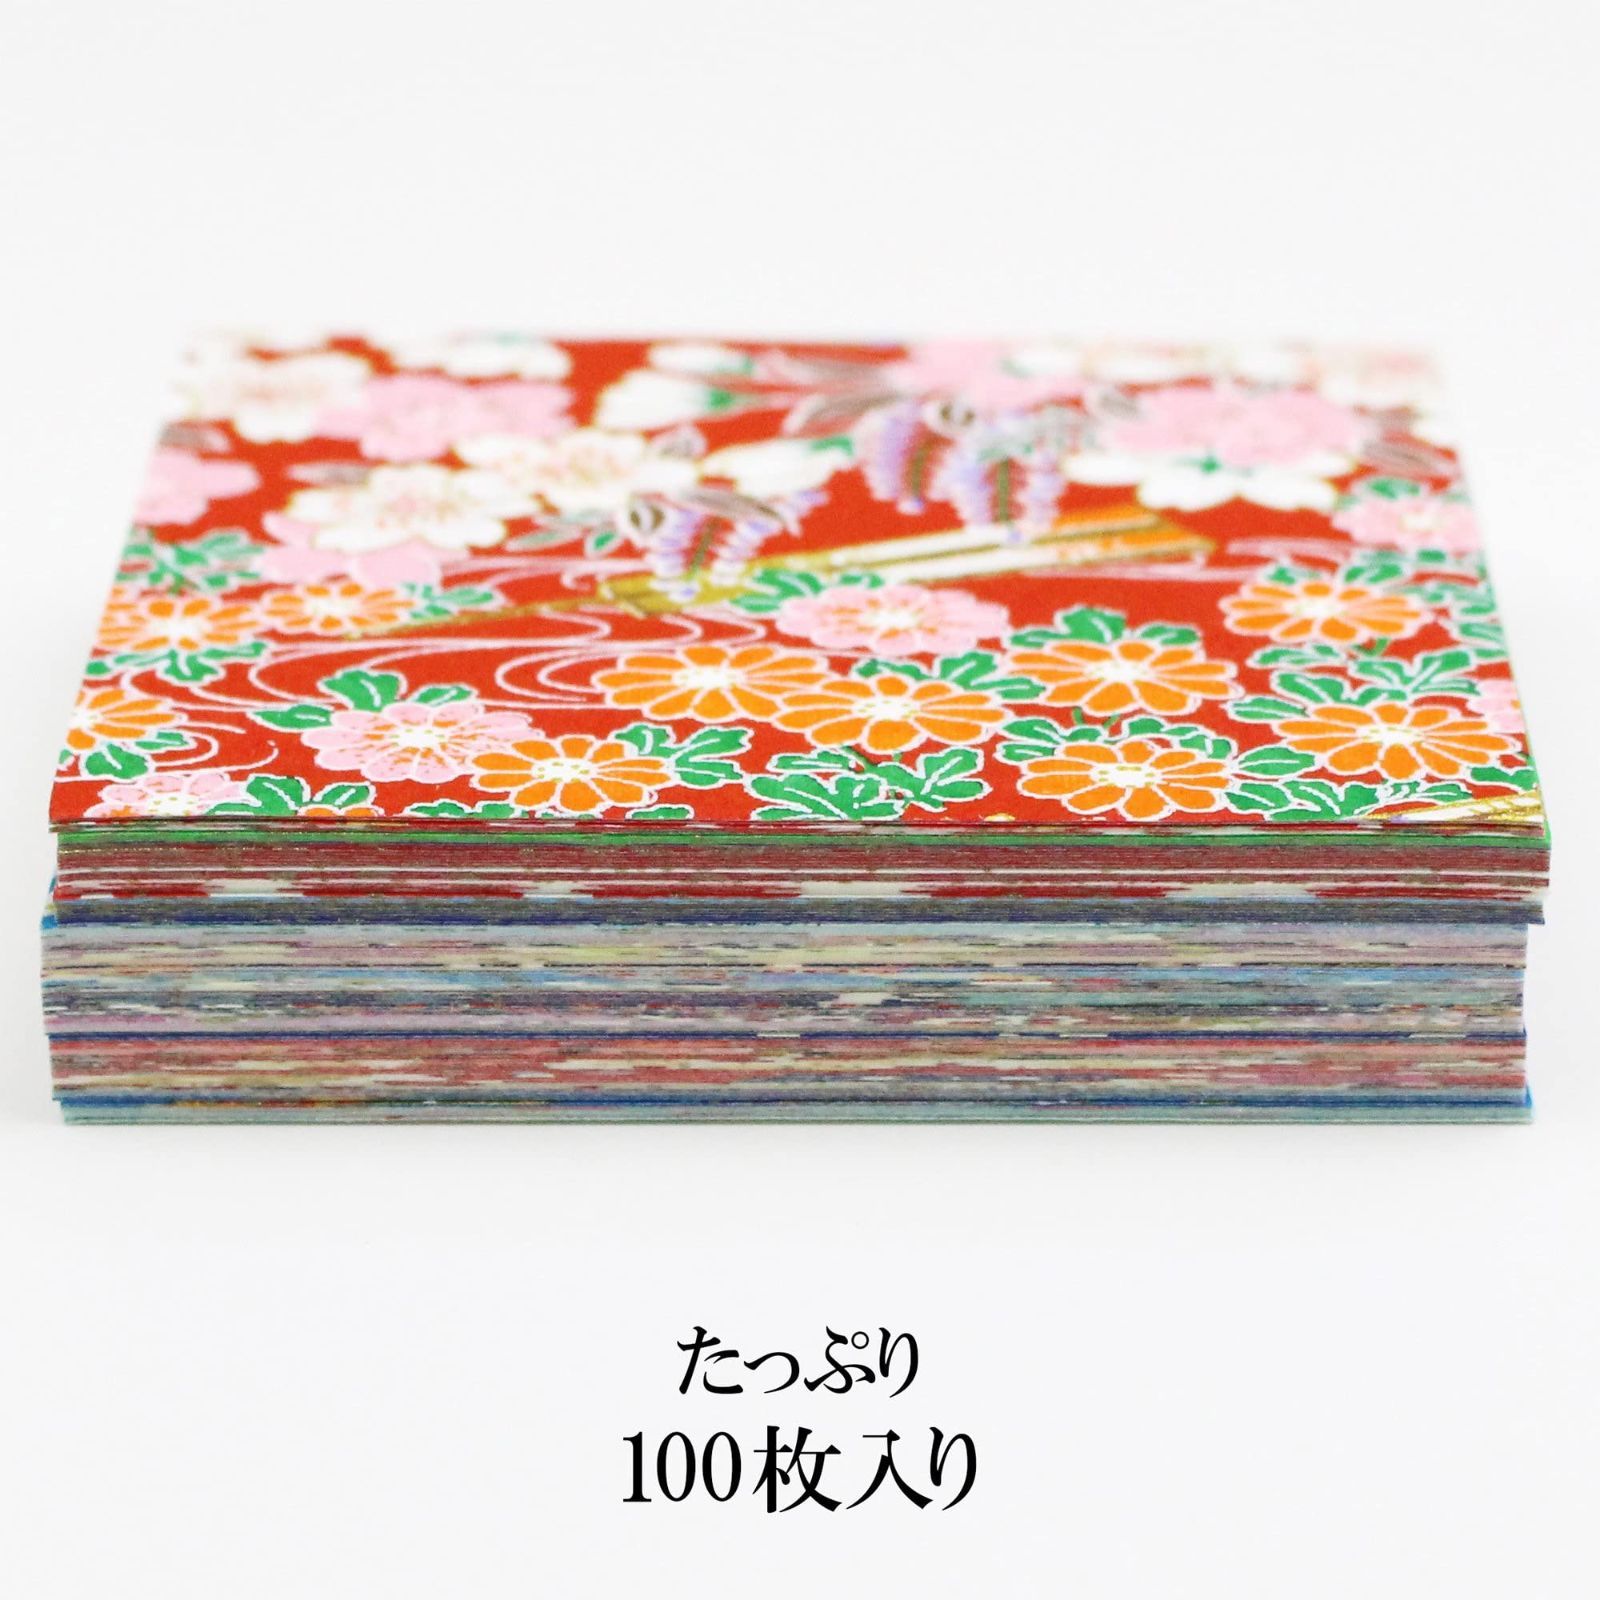 【数量限定】日本製墨書遊 春光園 折り紙 友禅手染和紙千代紙 7.5×7.5cm 100枚入 SKW-0550S